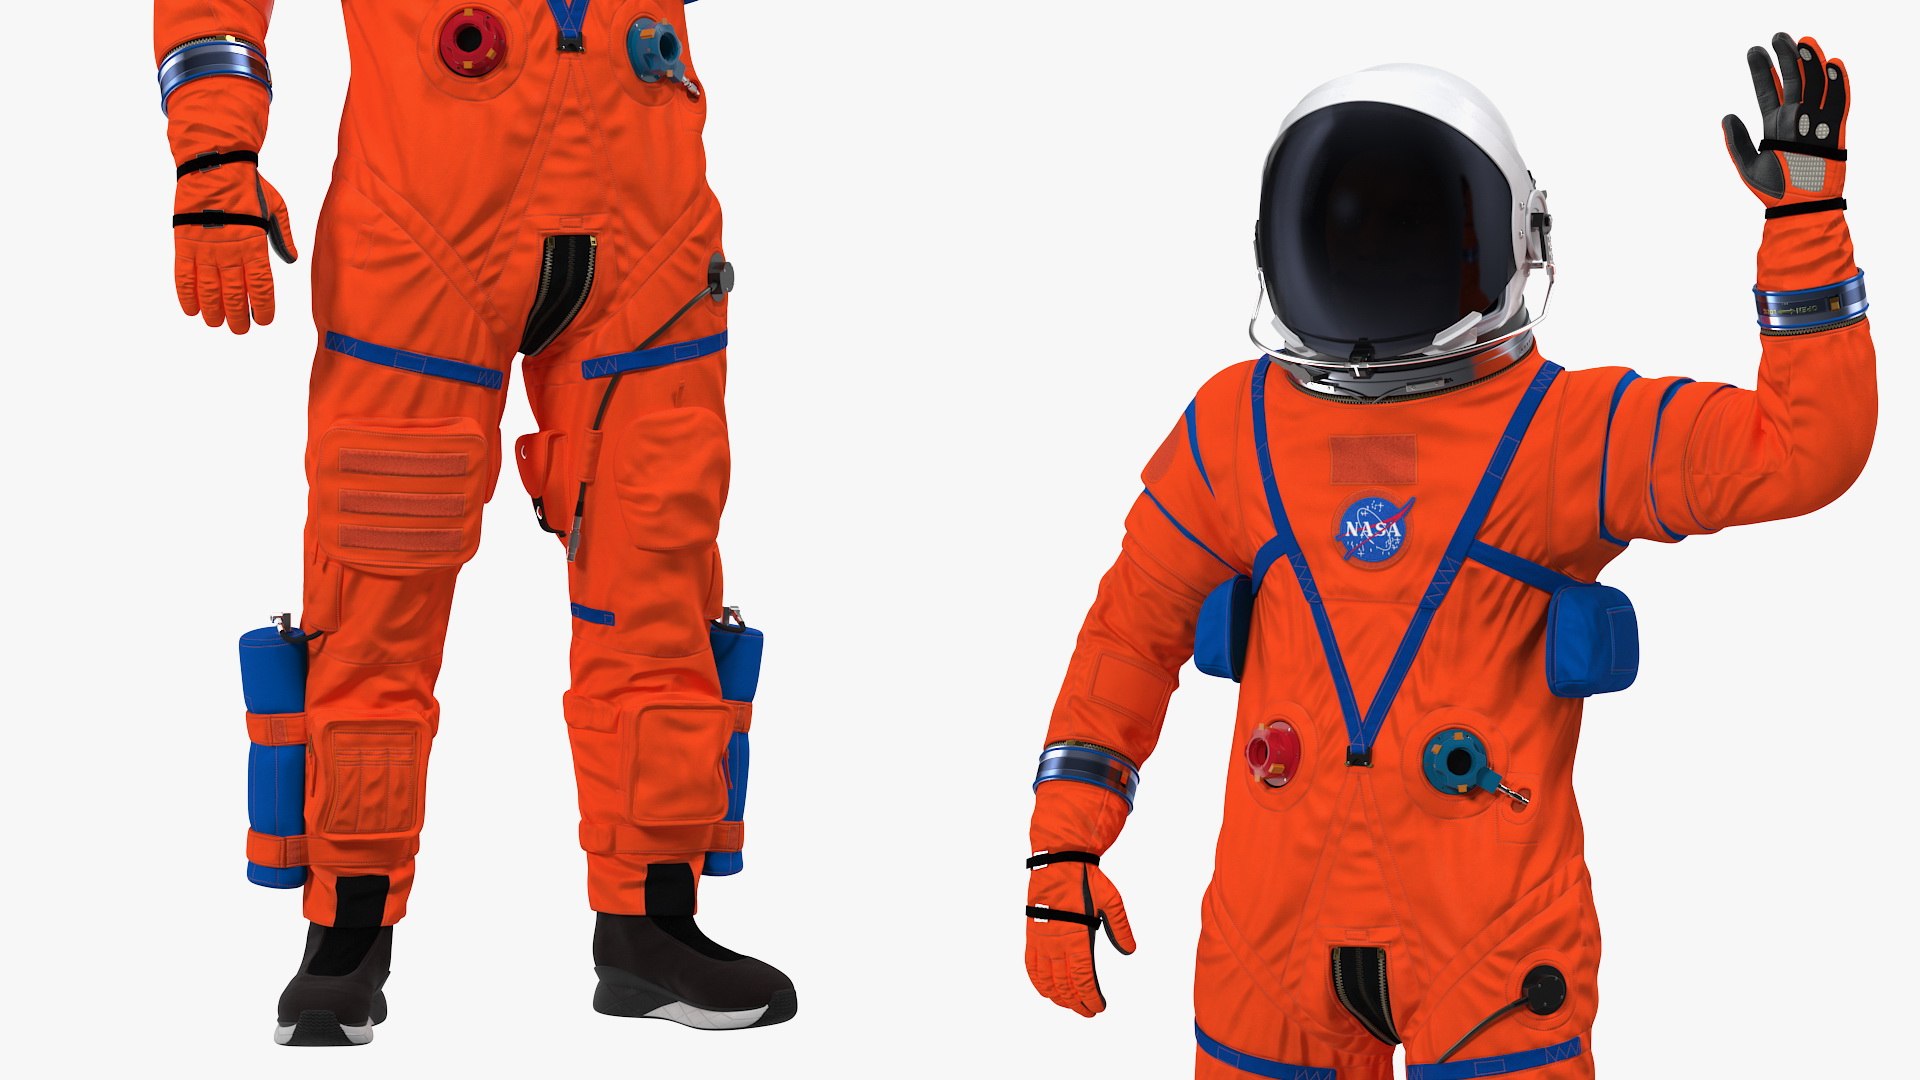 Astronaut aces spacesuit greetings model - TurboSquid 1576090